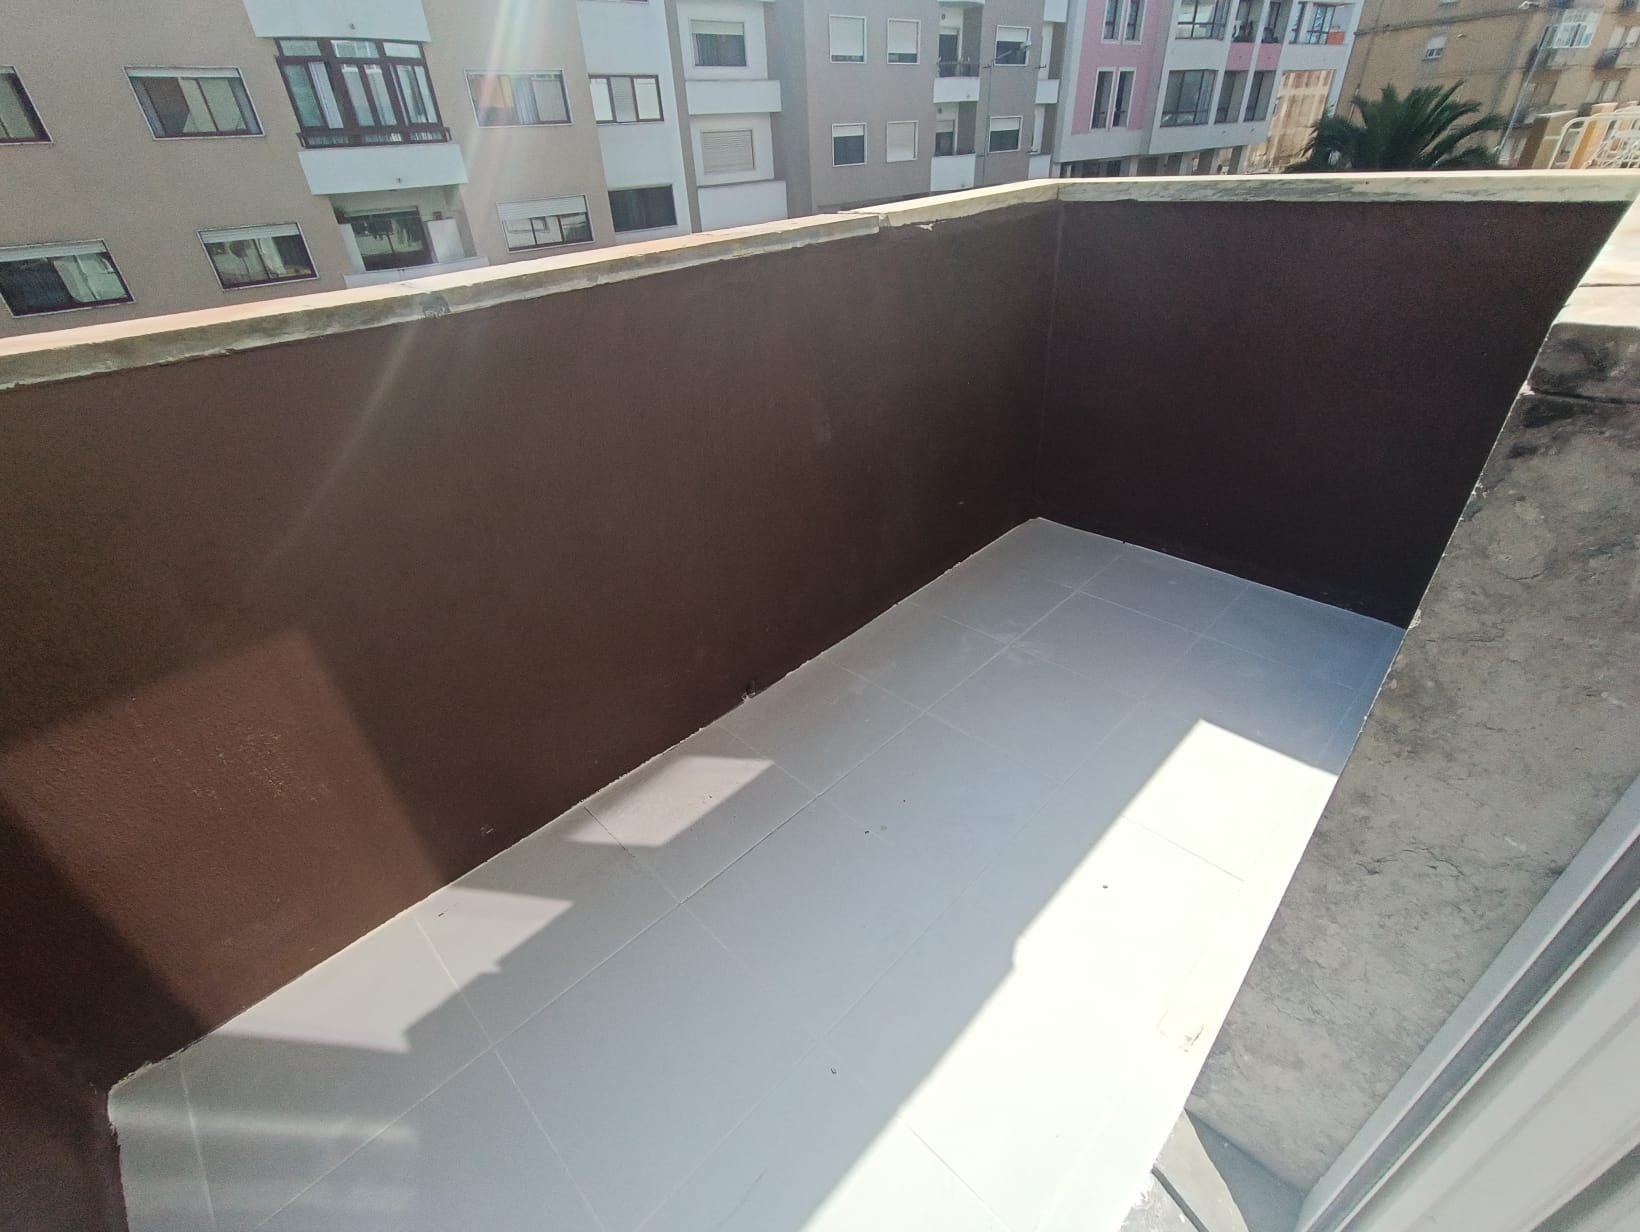 Refurbished Apartment in Centro (Agualva) – 82 m²